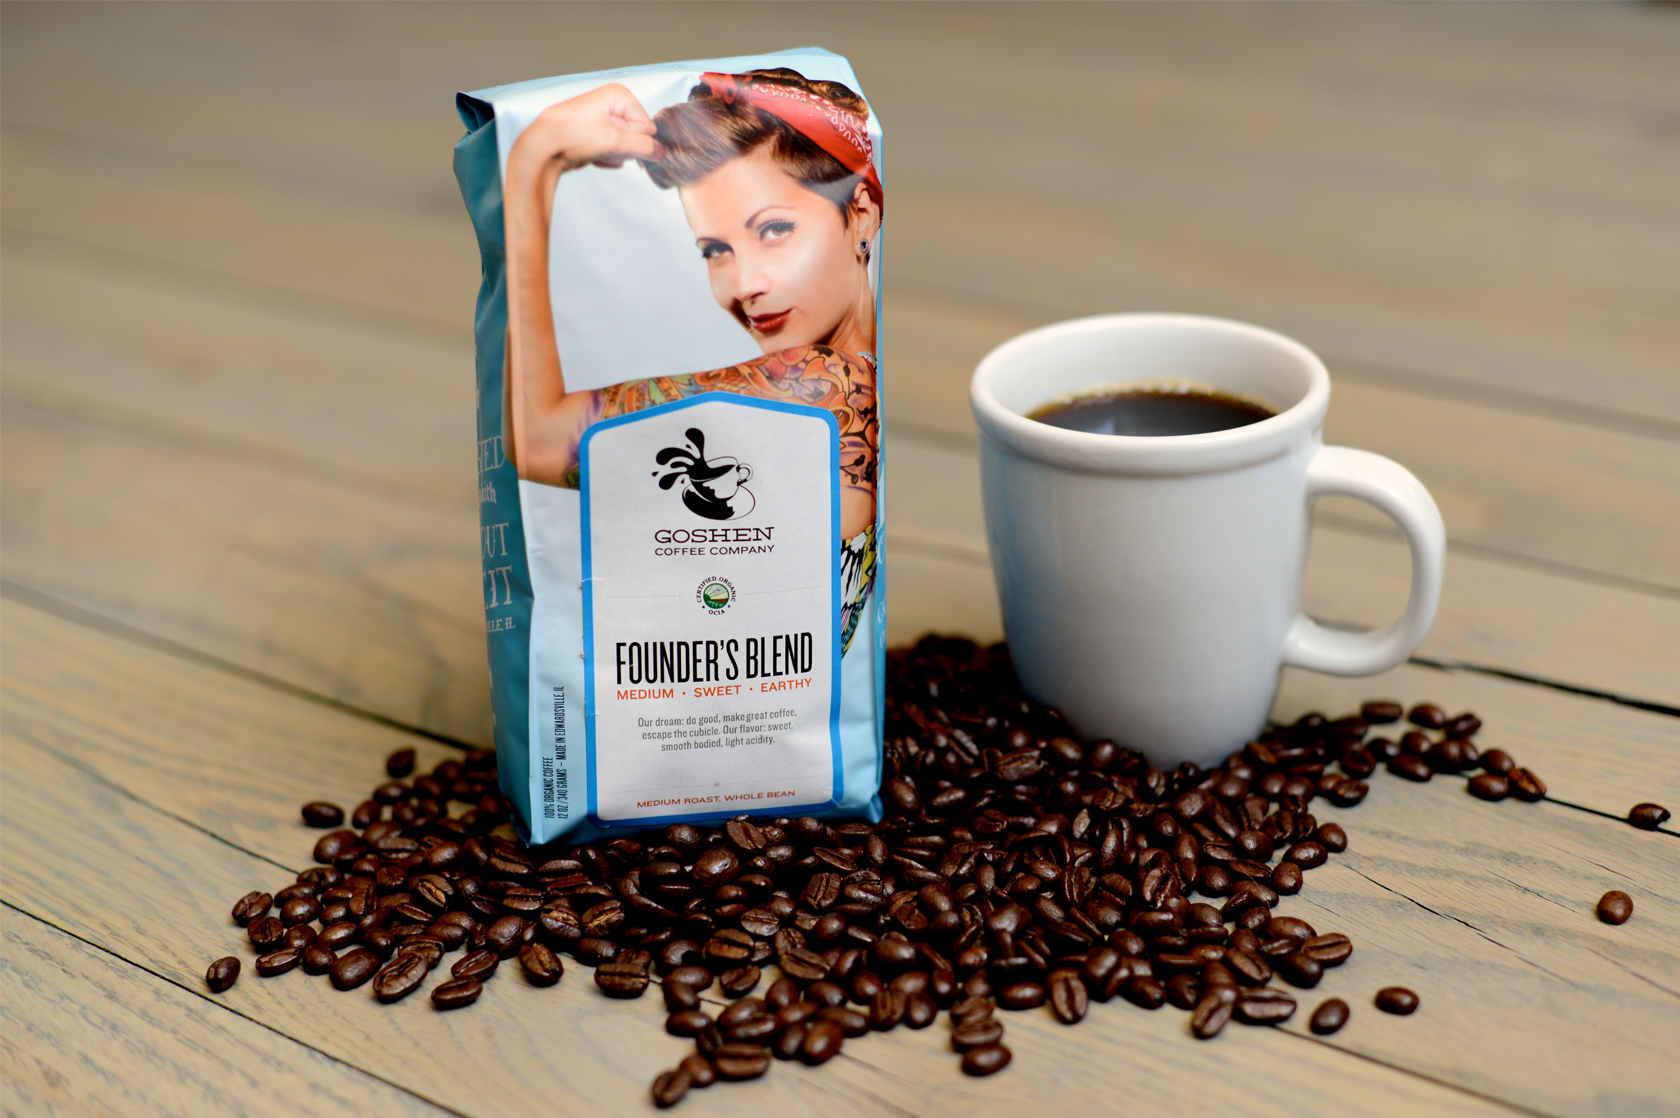 Goshen Coffee Branding, Packaging, and Website Design